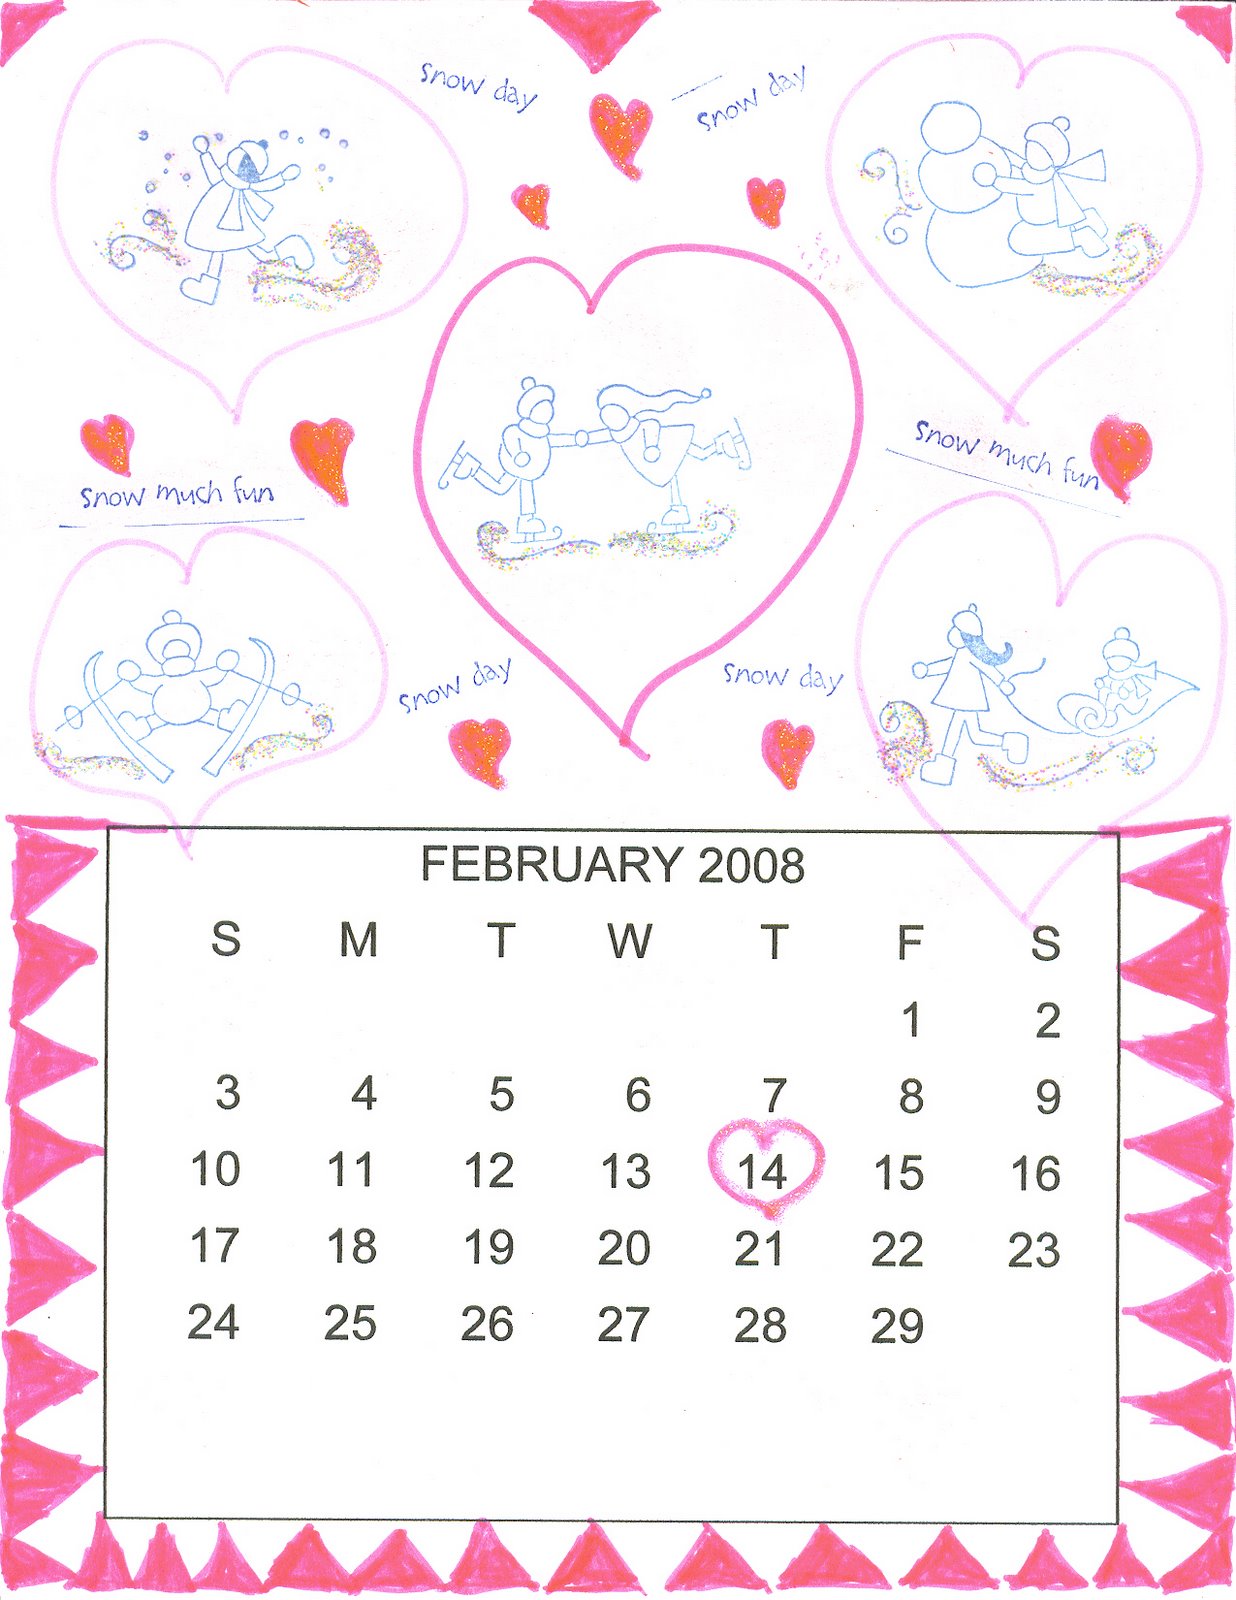 [2008+doodle+calendar-feb12-8-07.jpg]